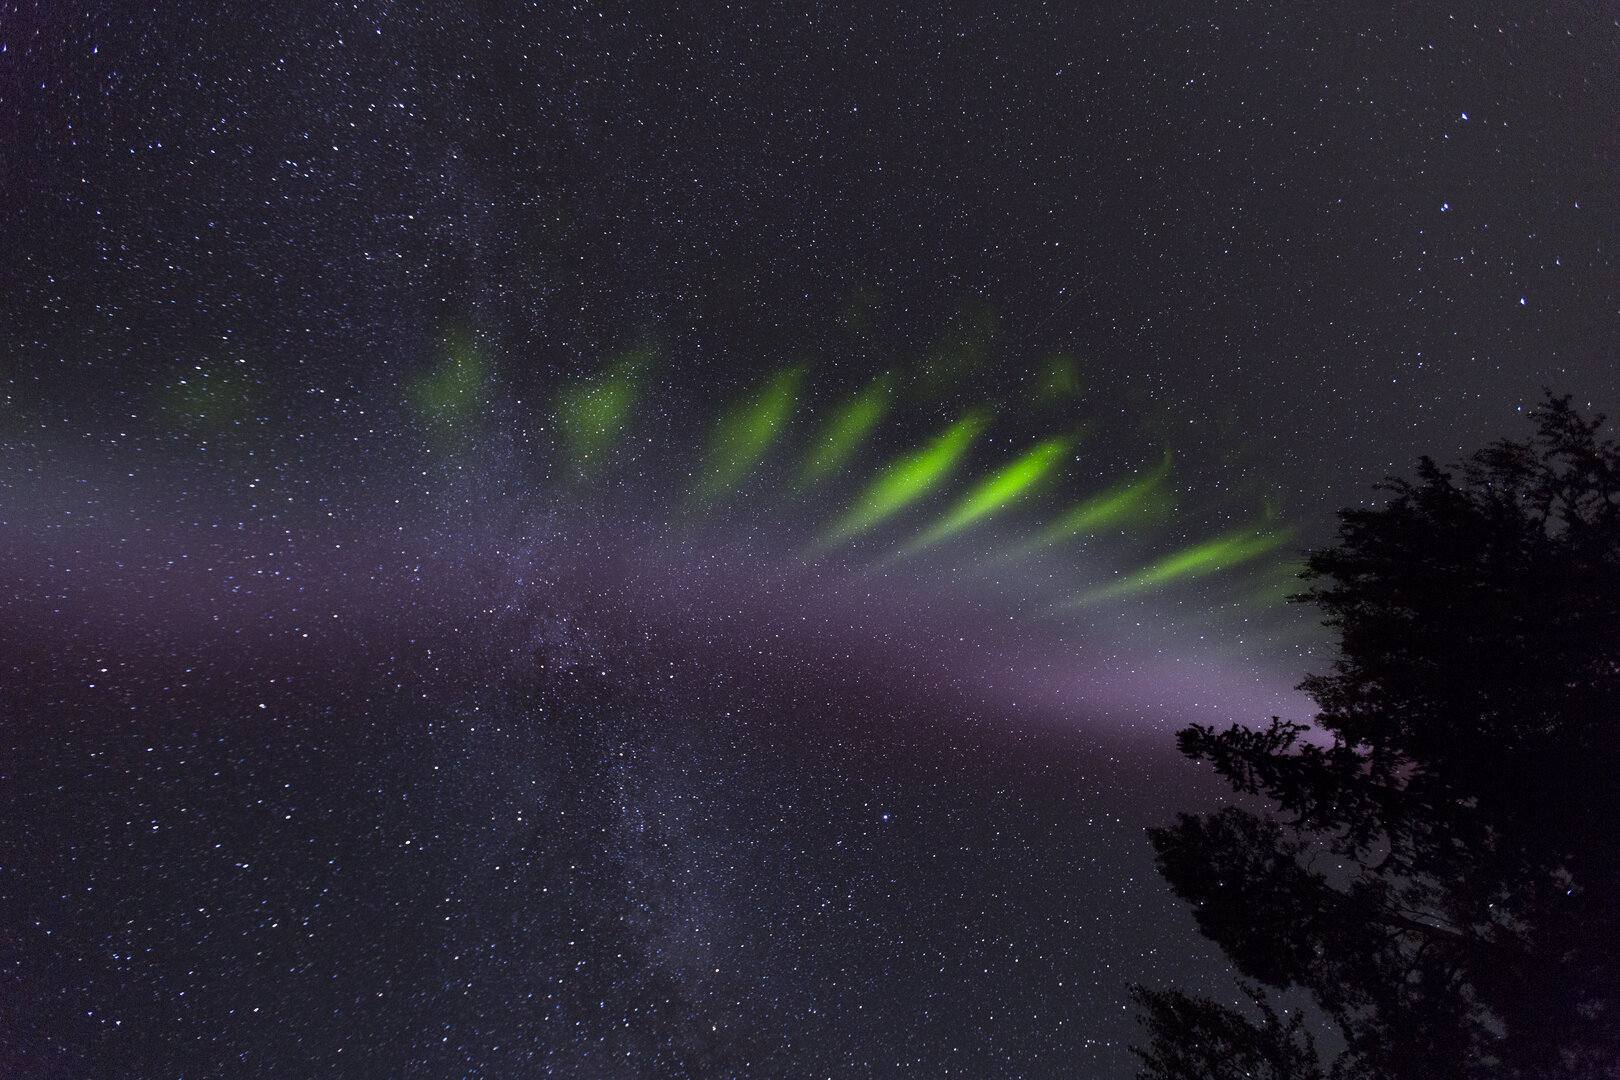 ゆきまさかずよし Esa スティーブ と呼ばれる極地の空の発光現象 オーロラとは異なる 紫色 に伴って現れる ピケットフェンス 柵状の緑色 の関係 T Co Arorehjlan オーロラウォッチャーや衛星監視などにより 光ってる高度などの解明が進んできた